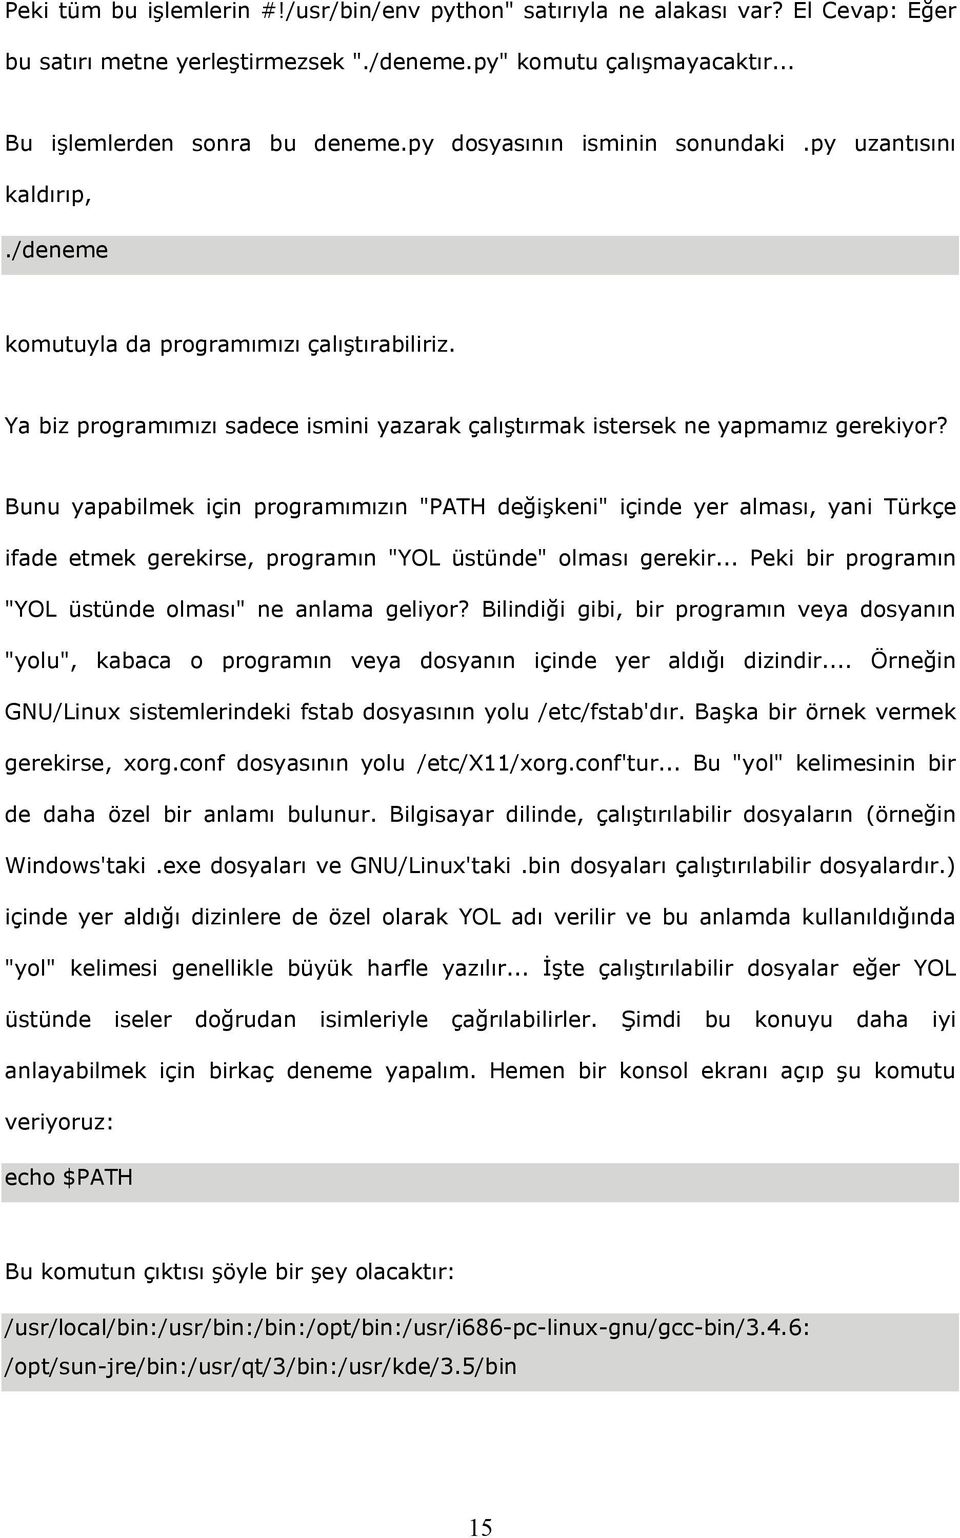 Bunu yapabilmek için programımızın "PATH değişkeni" içinde yer alması, yani Türkçe ifade etmek gerekirse, programın "YOL üstünde" olması gerekir.